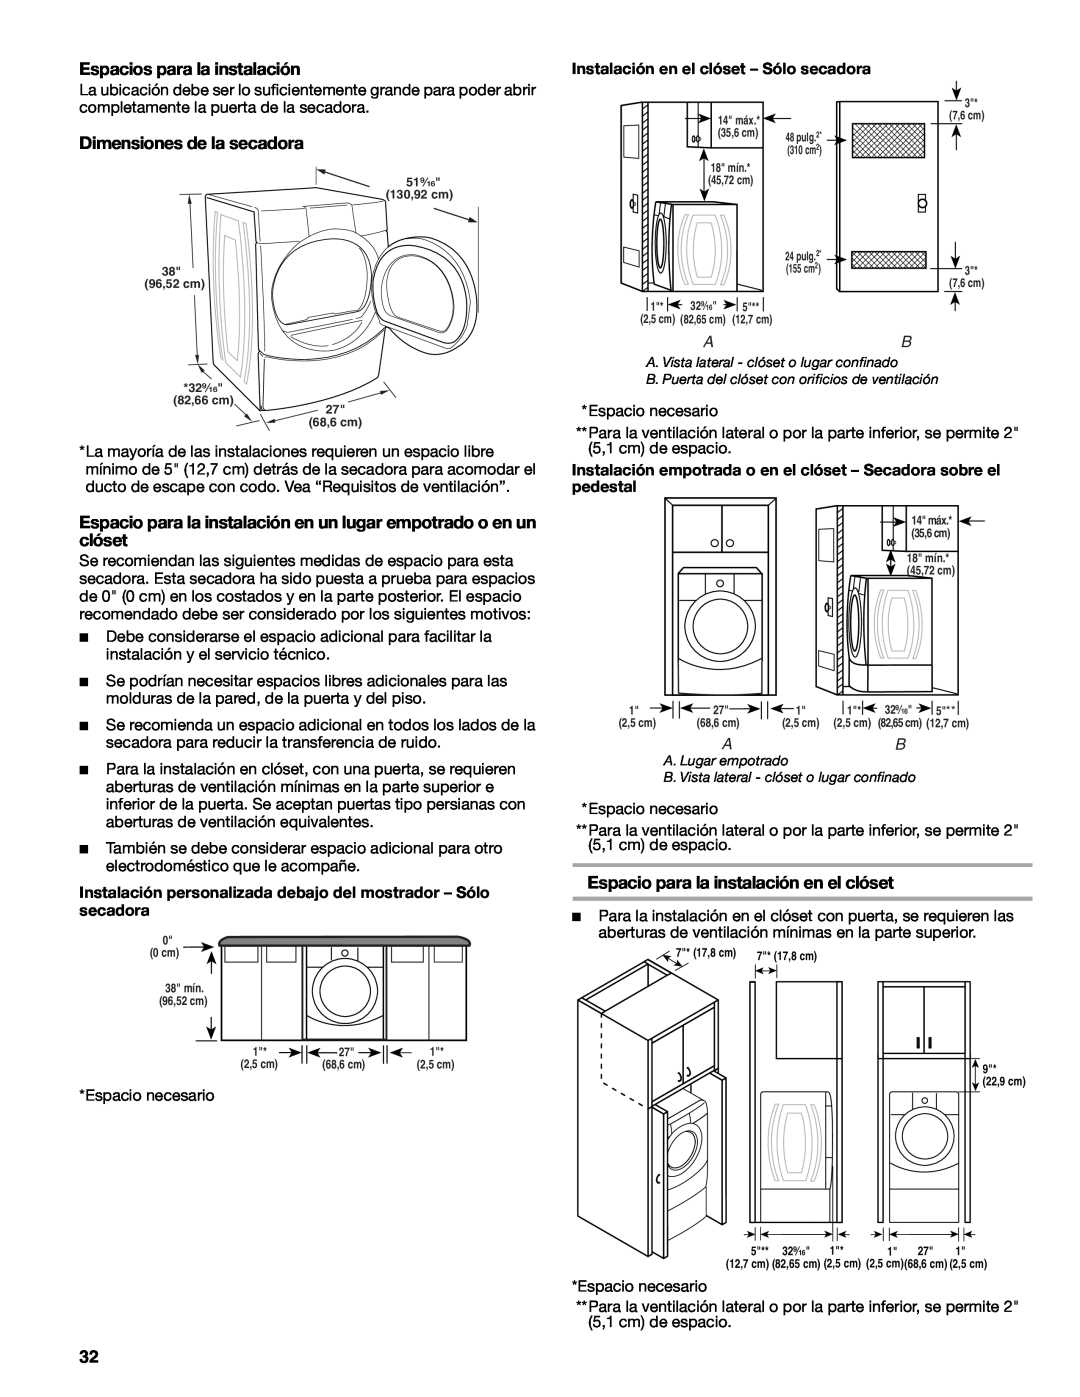 Suunto 110.9772 manual Espacios para la instalación, Dimensiones de la secadora, Espacio para la instalación en el clóset 